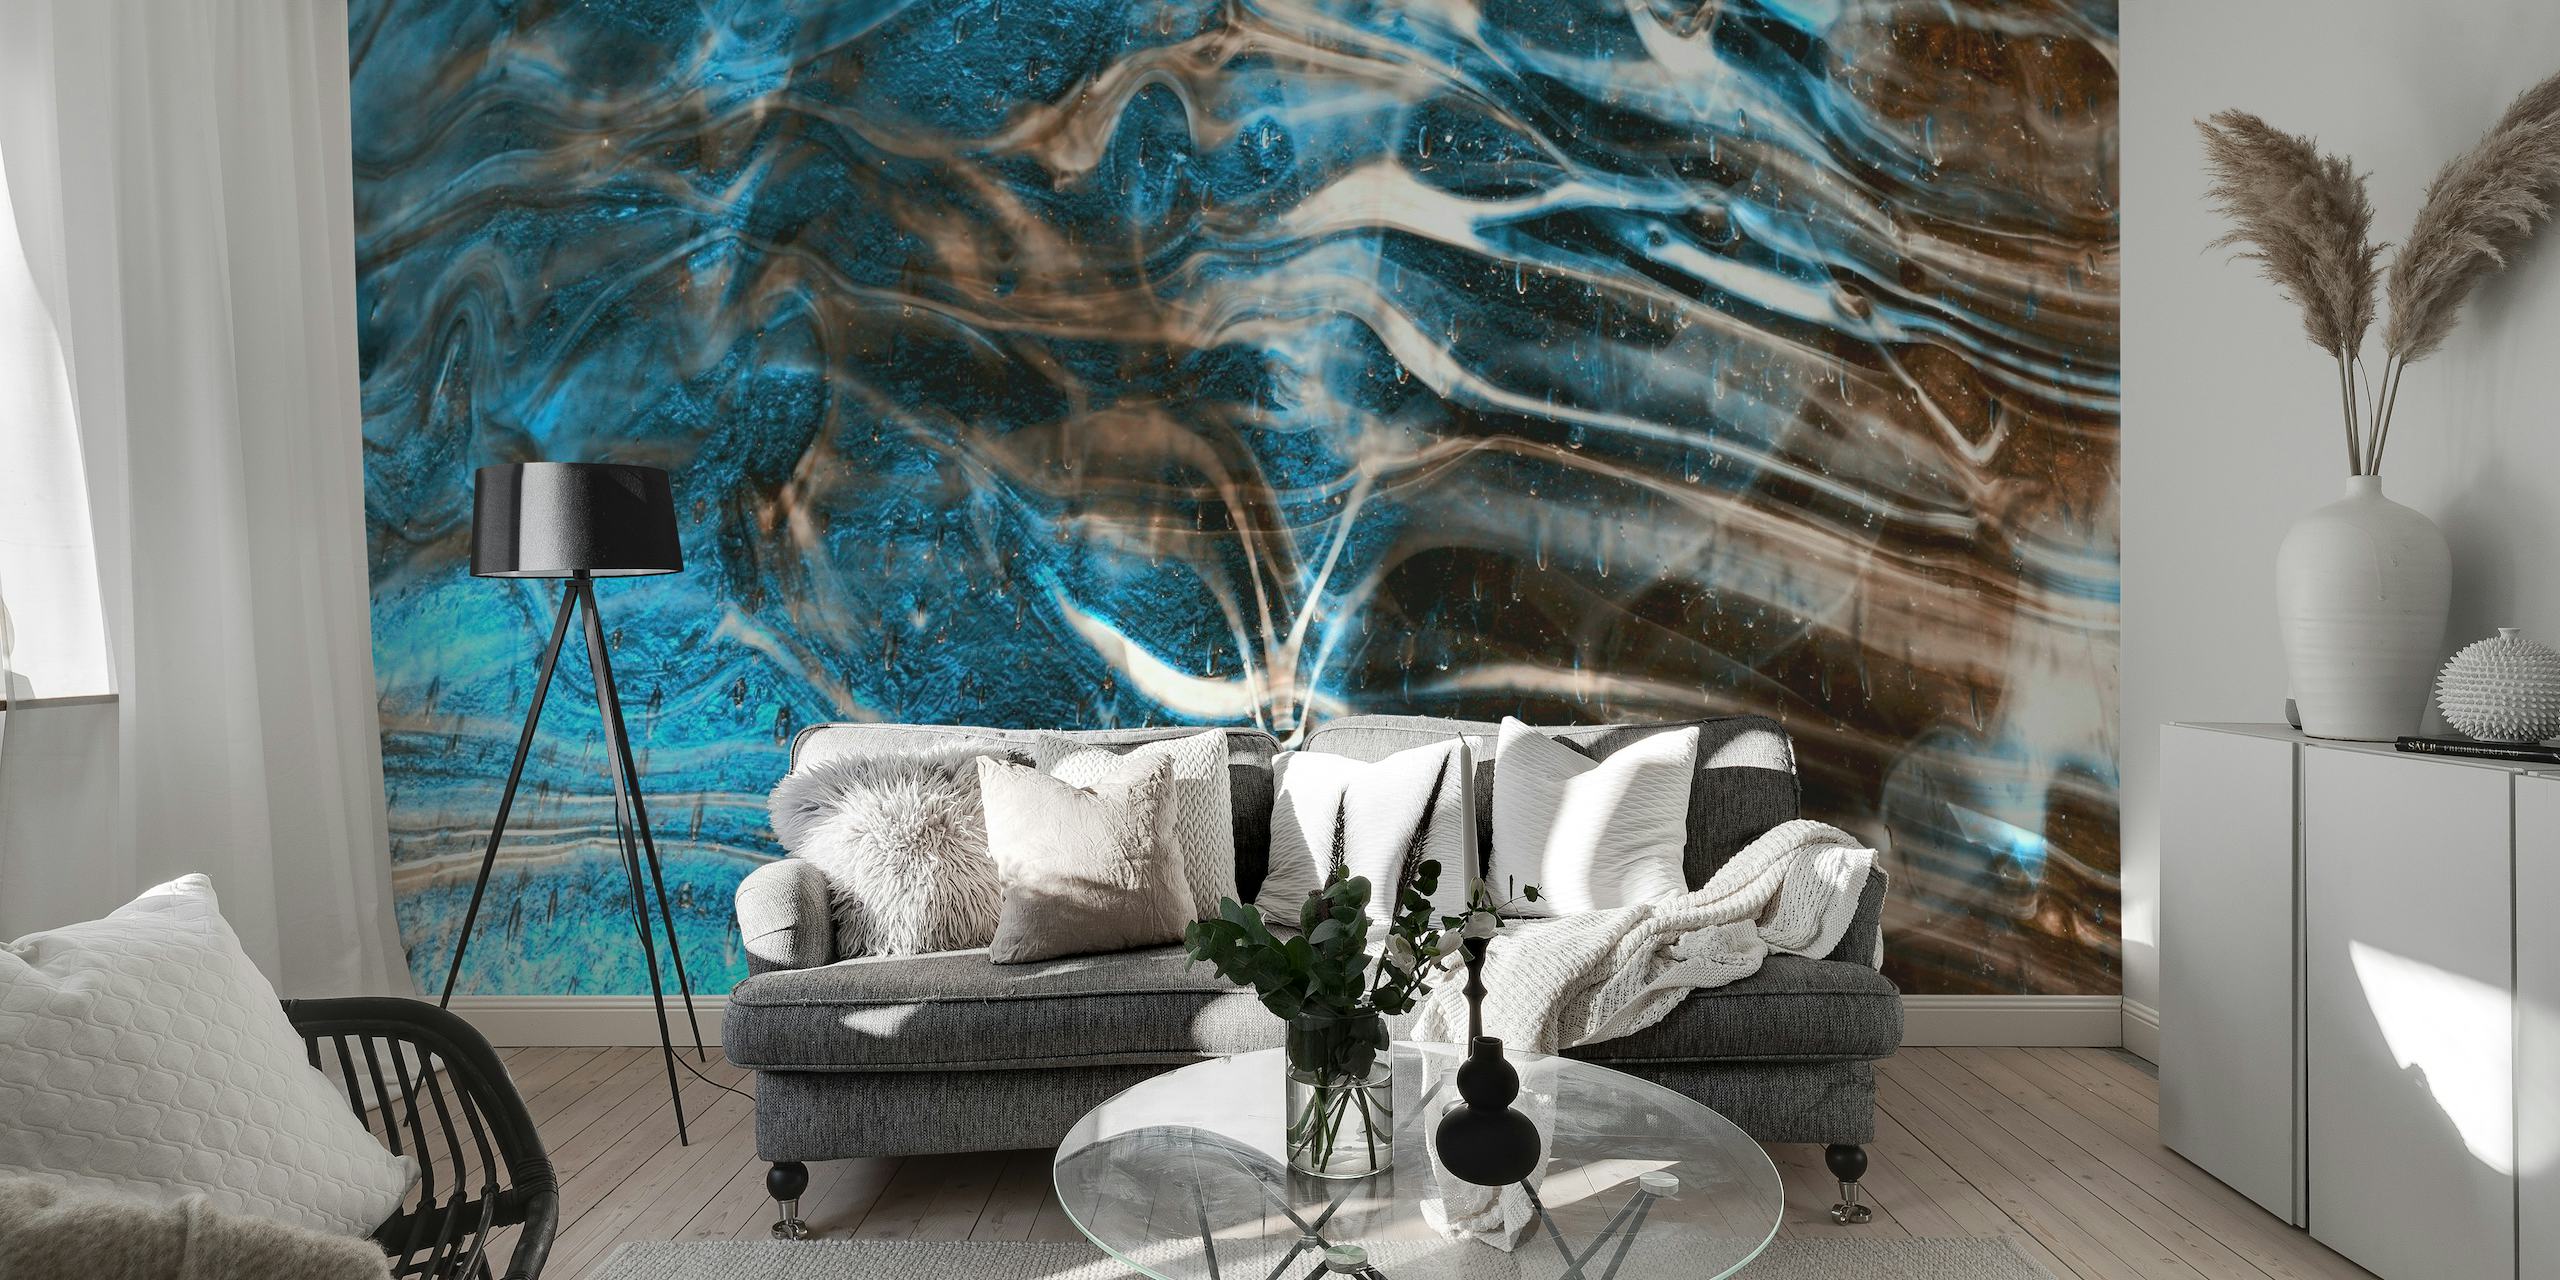 Sininen ja ruskea marmorikuvioinen seinämaalaus rauhoittaa huoneen tunnelmaa